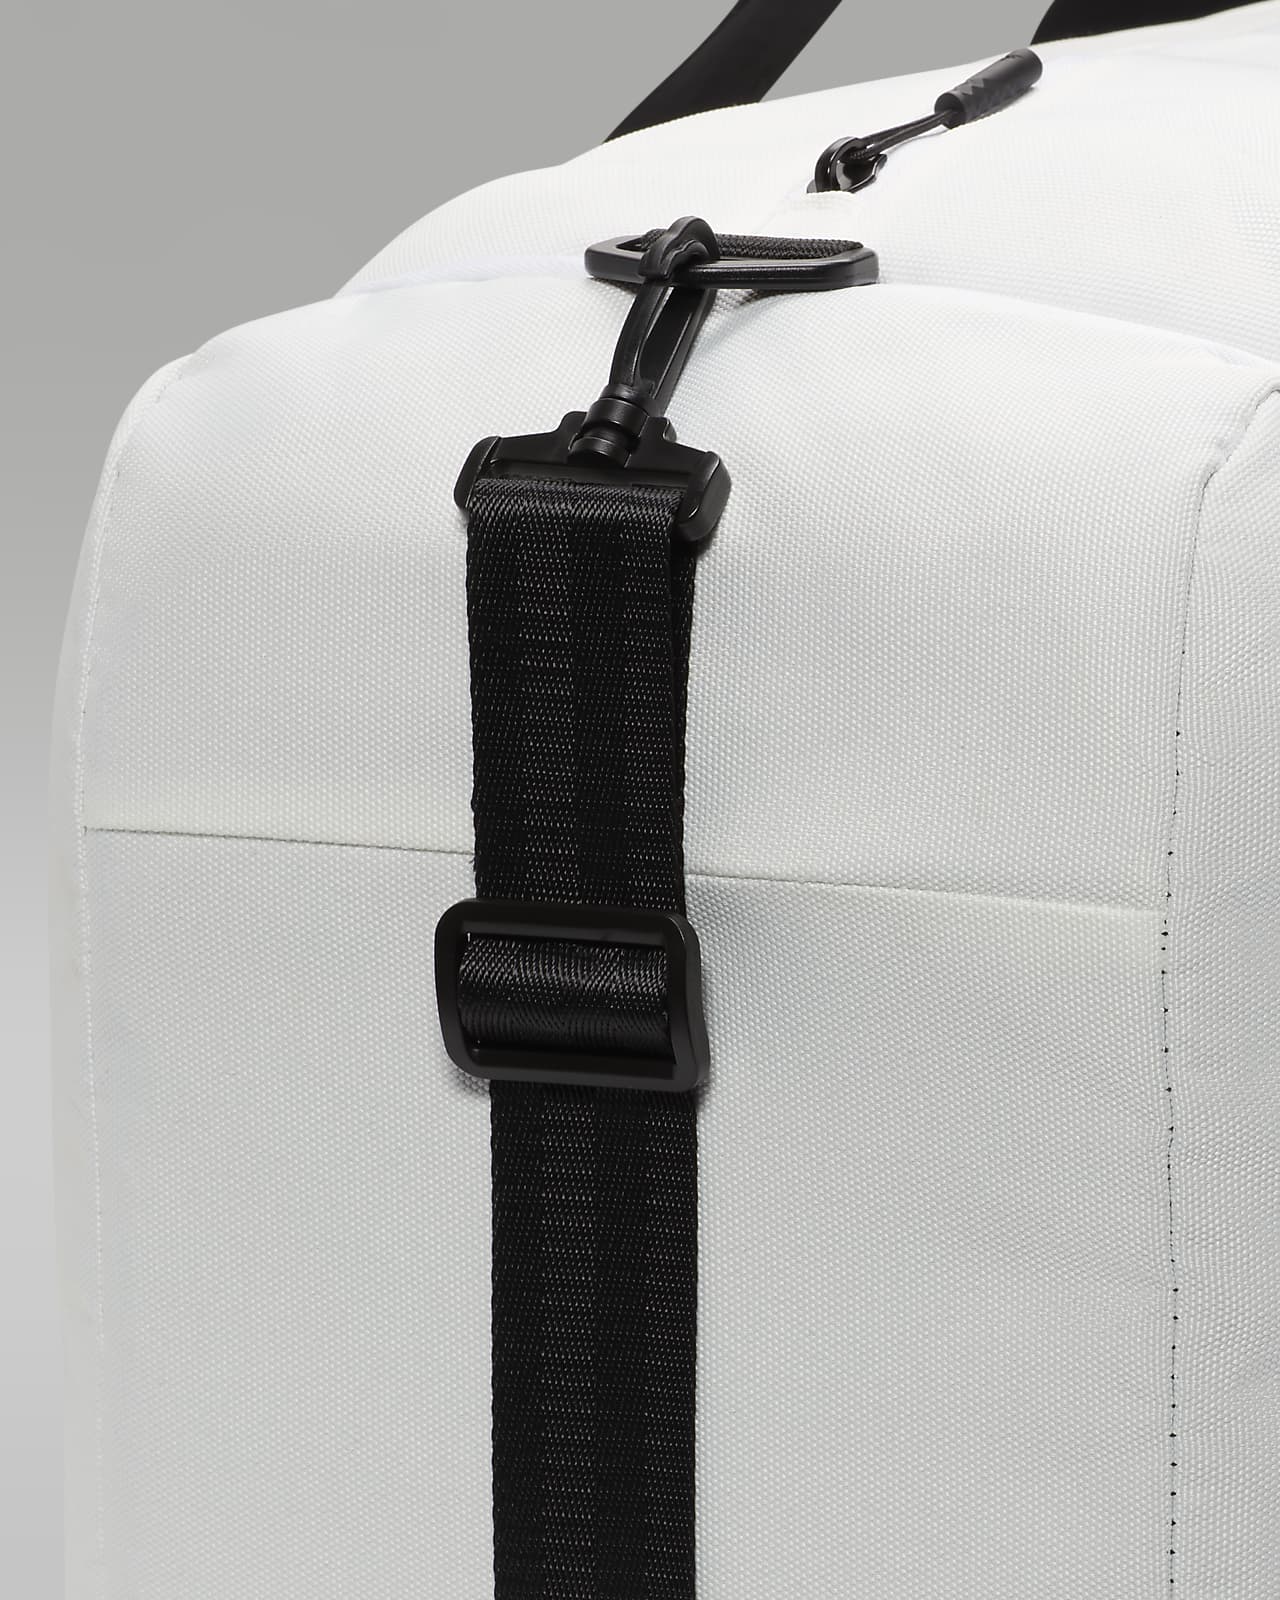 AIR JORDAN VELOCITY Sport Duffle Bag Med/Large Black Red White NEW